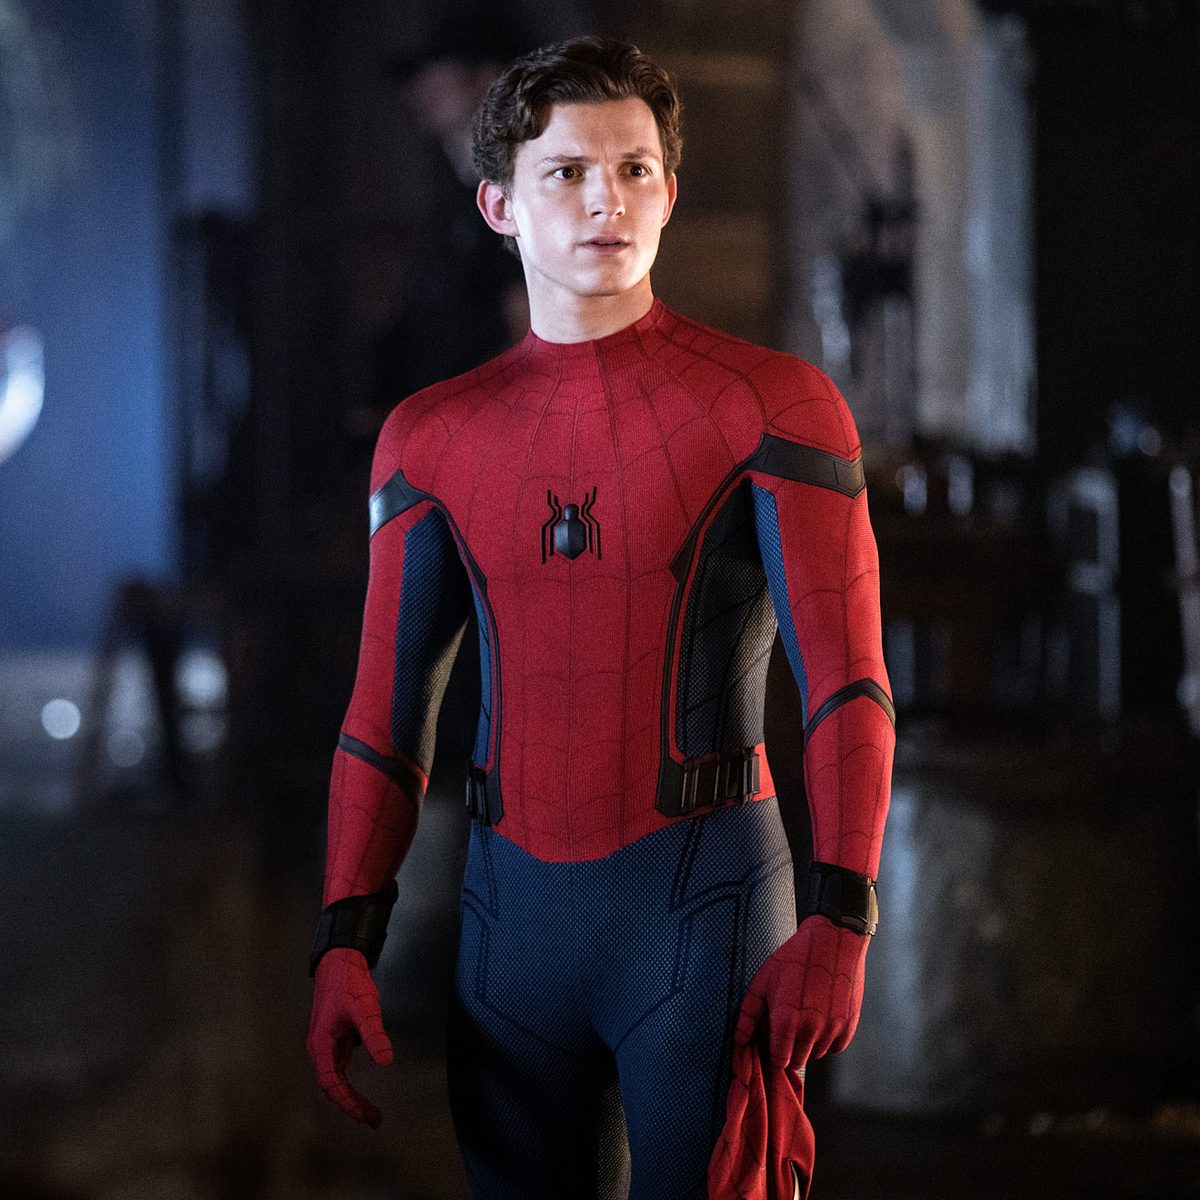 Spider-Man: Far From Home war der zweite Teil mit Tom Holland als Spidey und kam im Juli 2019 in die Kinos